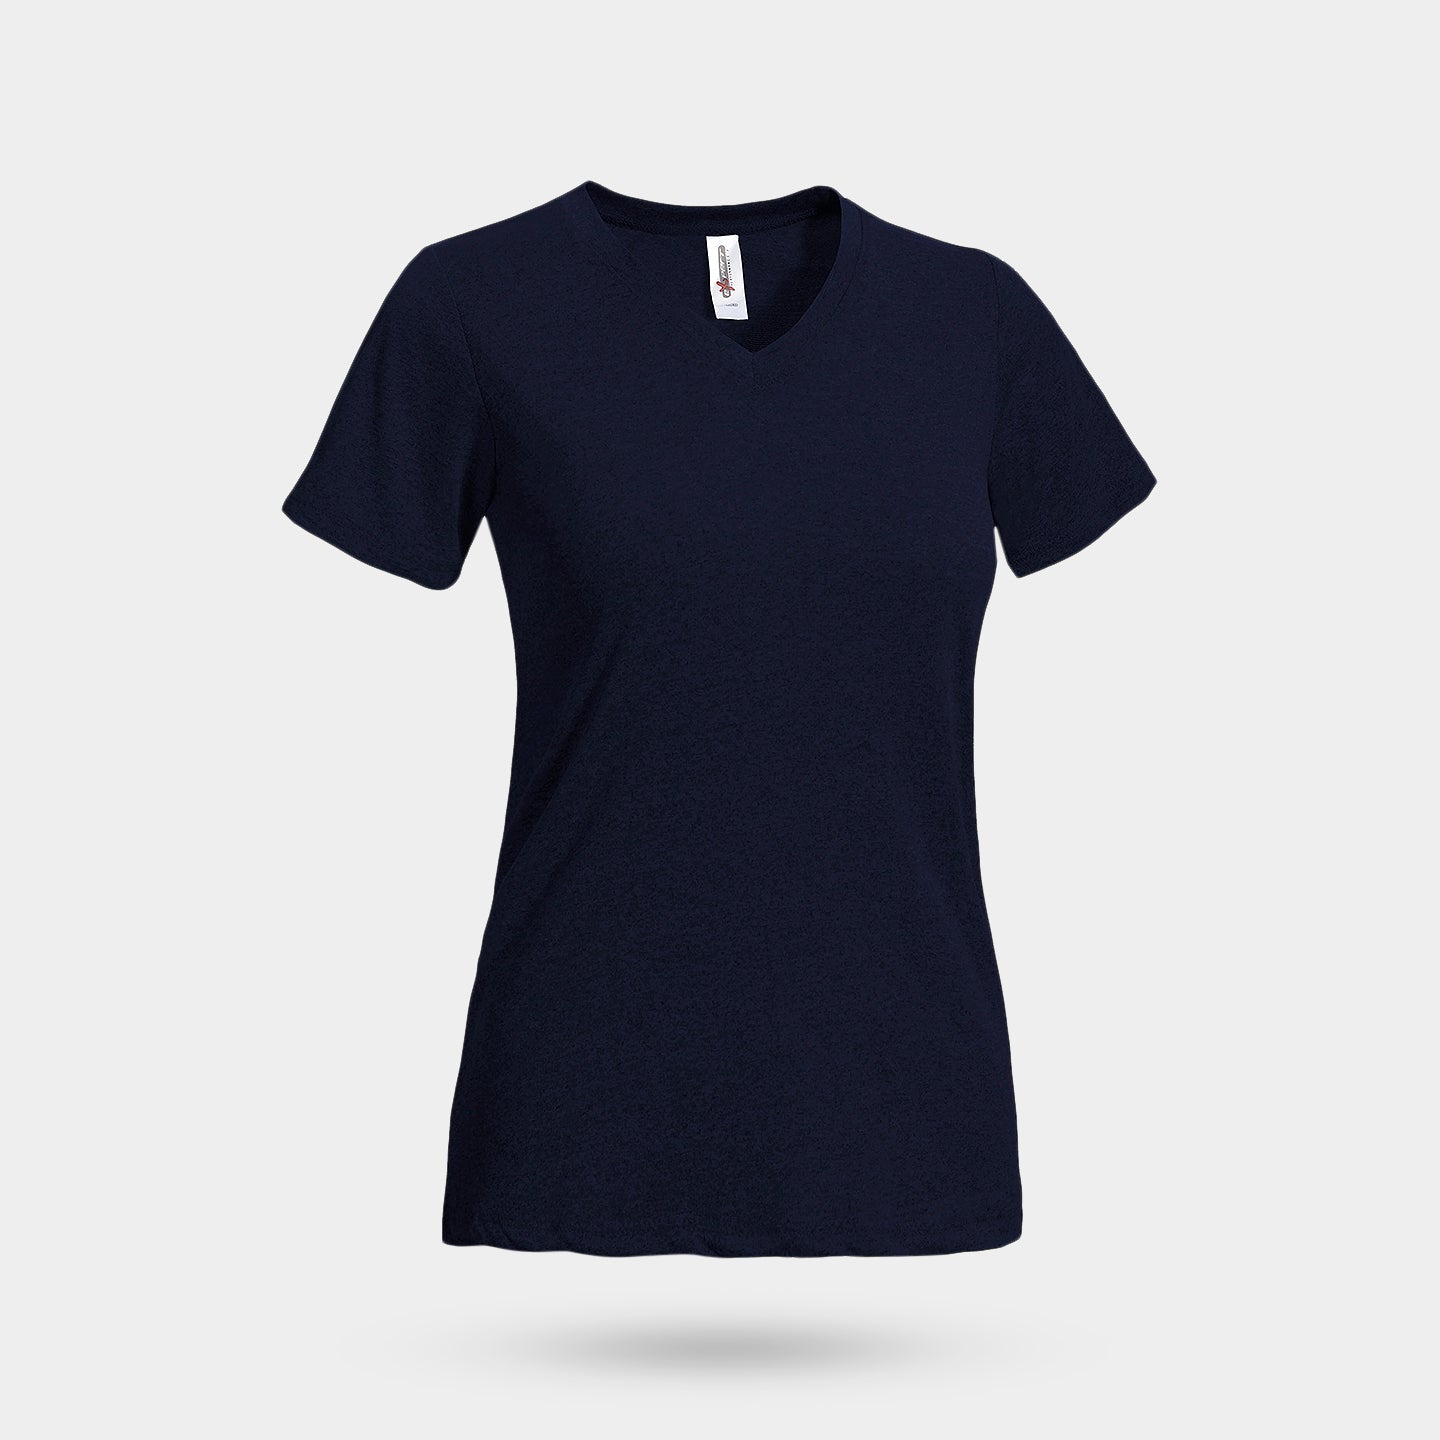 Expert Brand Women's Natural-Feel Jersey V-Neck T-Shirt, L, Navy A1